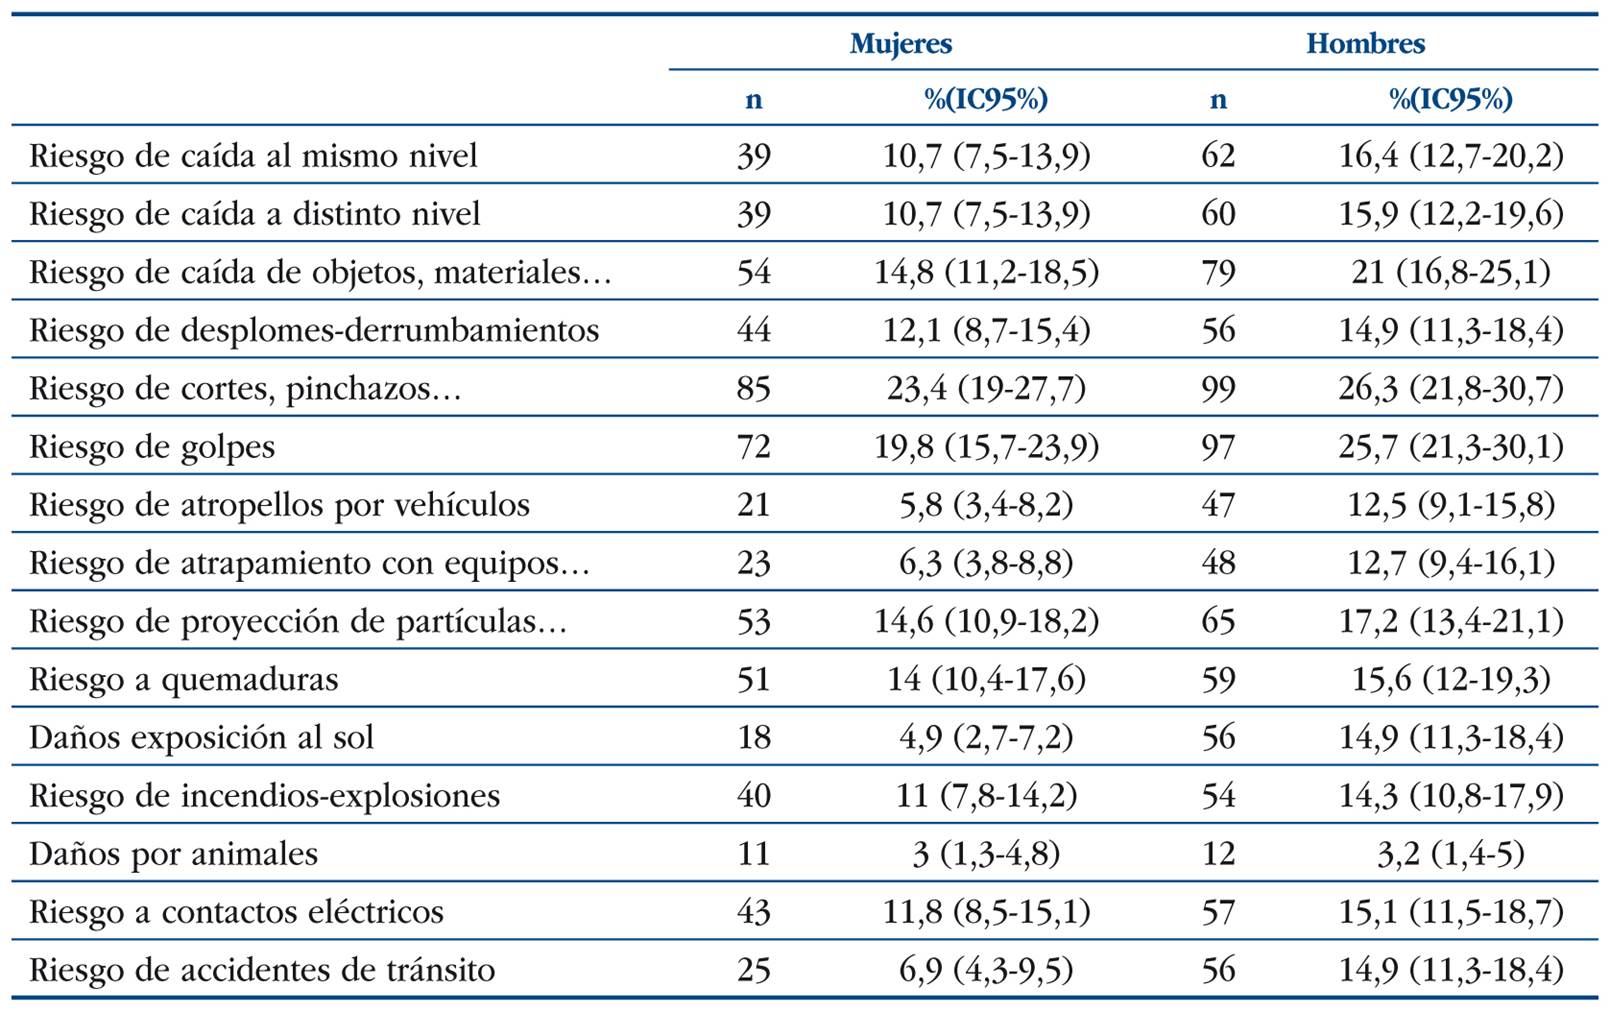 I Encuesta sobre Condiciones de Seguridad y Salud en el Trabajo para  Ecuador. Principales resultados en la ciudad de Quito, 2016